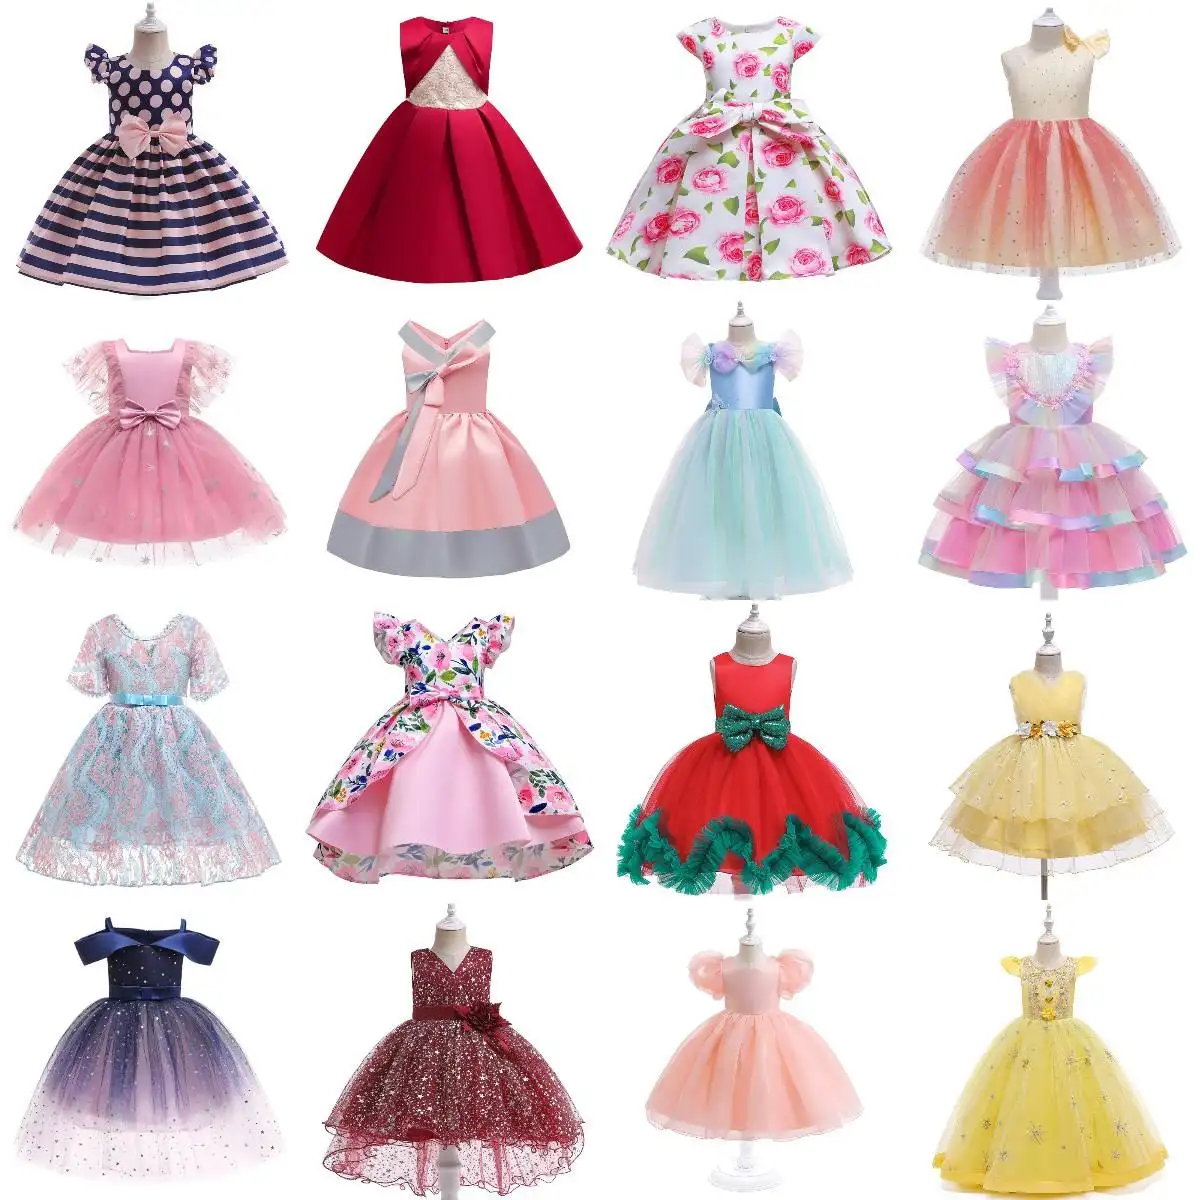 Kinder kleidung Kinder party kleine Mädchen Kostüm kleider für Mädchen Big Bow Cake Pettis kirt Prinzessin Kleid Mädchen